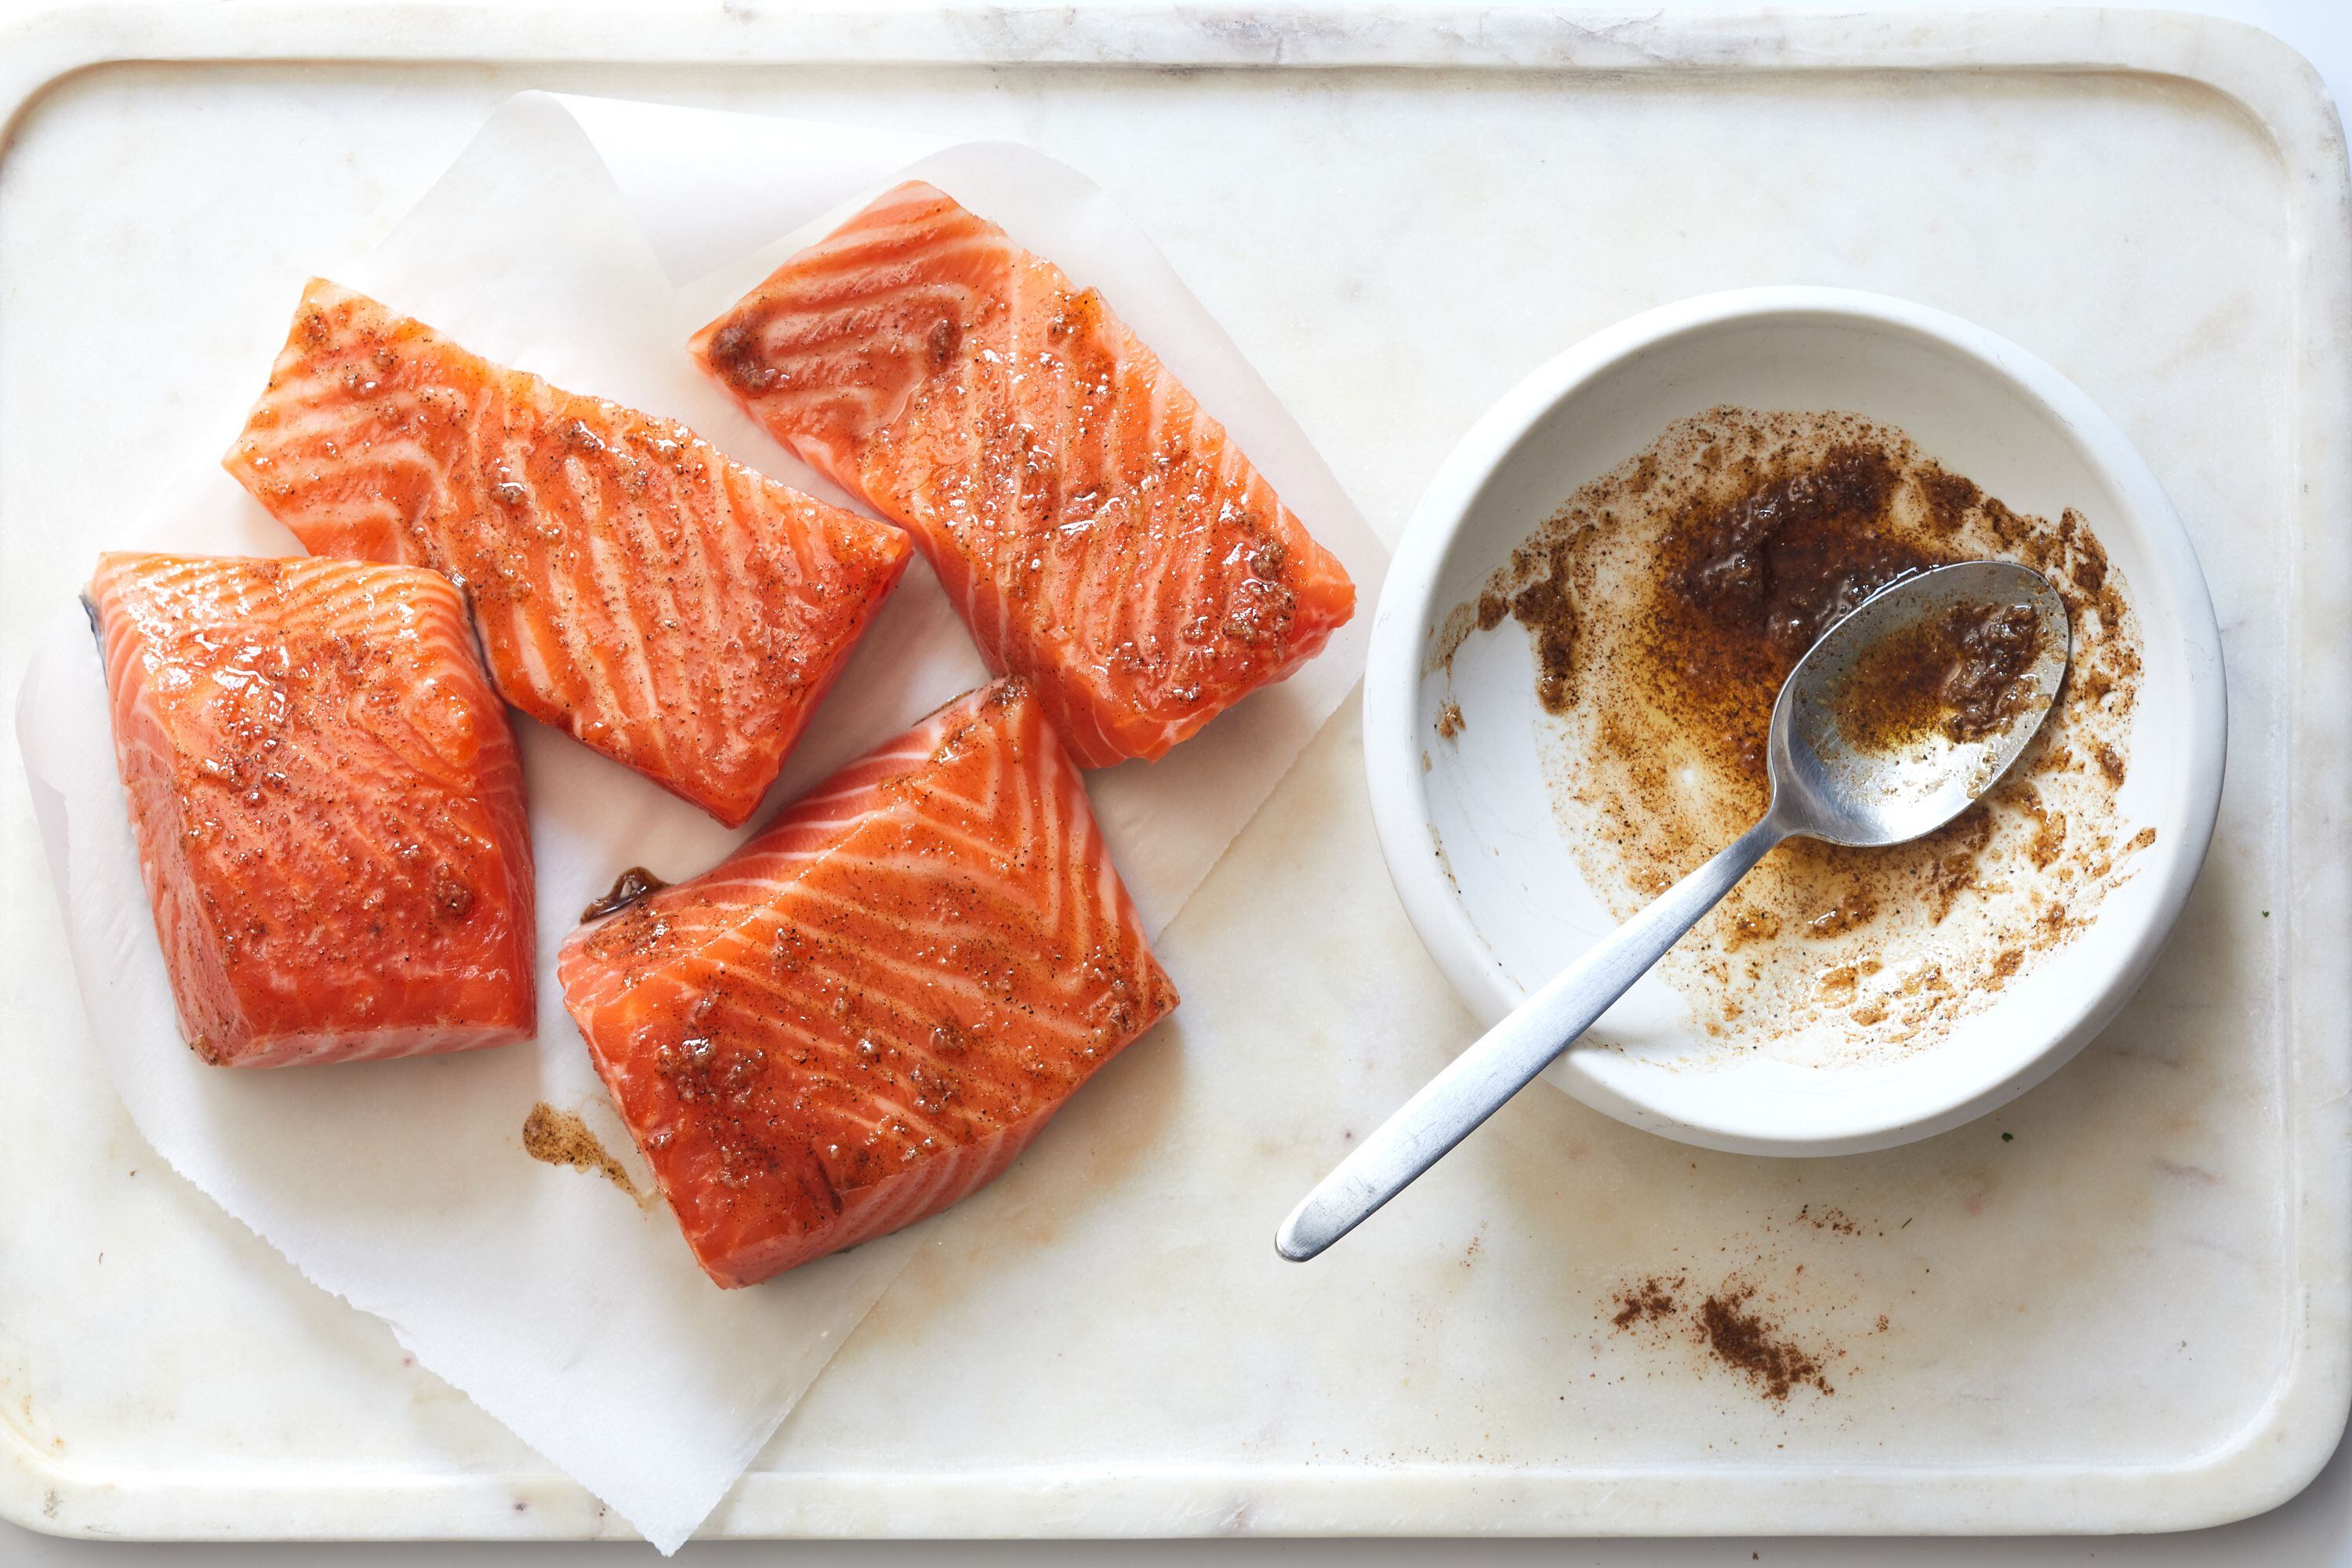 Pescado, pollo, legumbres, y nueces son fuentes de proteínas saludables y versátiles – pueden ser mezcladas en ensaladas, y combinan bien con vegetales en un plato (The New York Times)